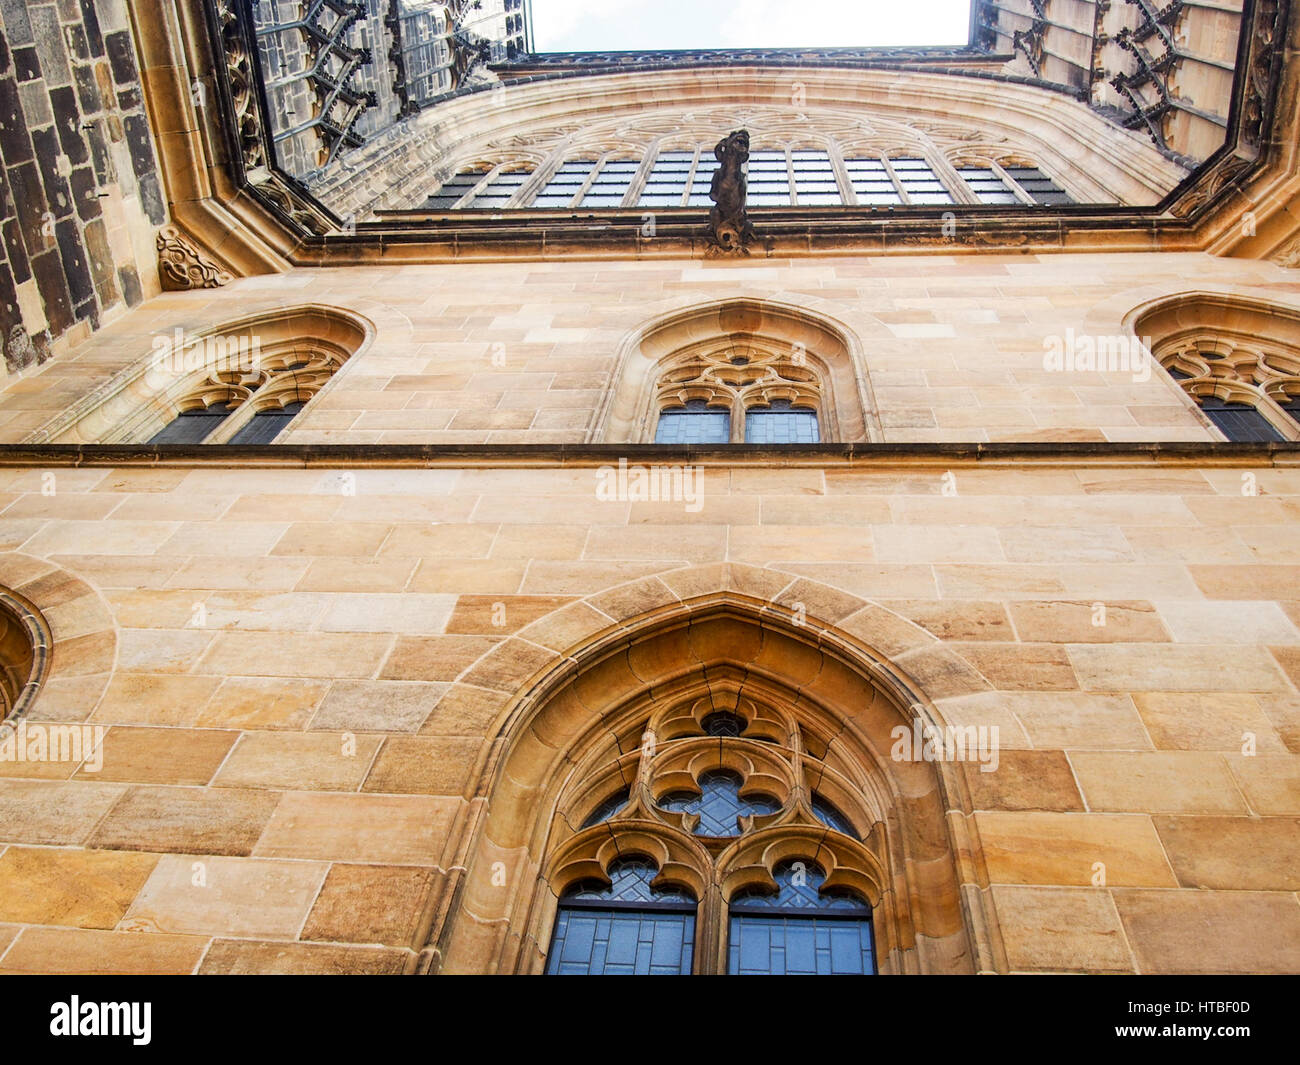 Detalle de la pared de la catedral de Praga, República Checa. Foto de stock